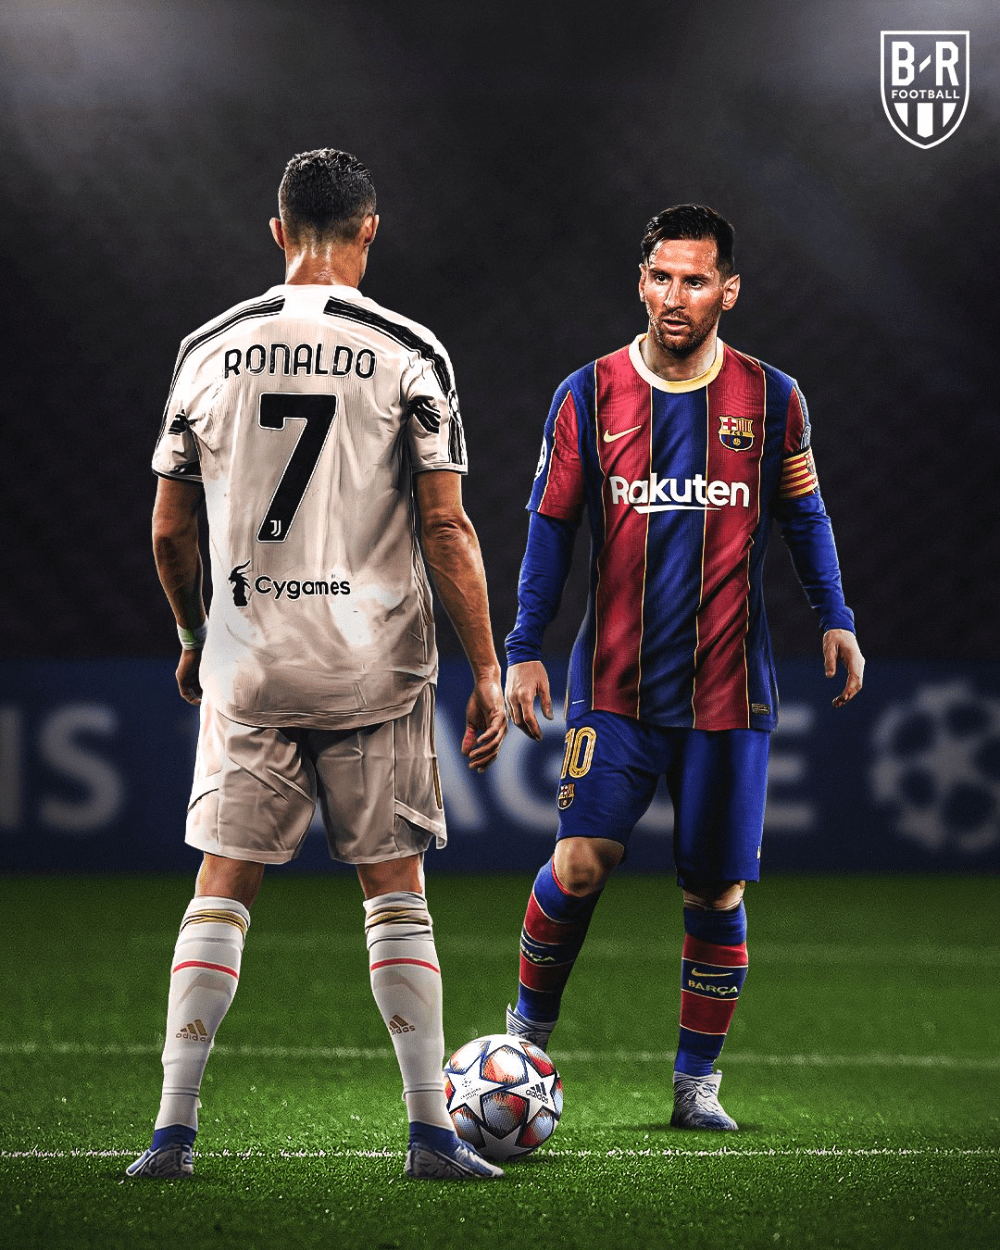 Khám phá hình nền Messi Cristiano Ronaldo để trải nghiệm tuyệt vời hơn trong thế giới bóng đá. Hai cầu thủ tấn công đỉnh cao này có sức hút đến từ khả năng điêu luyện trên sân cỏ cùng tình bạn sâu nặng.